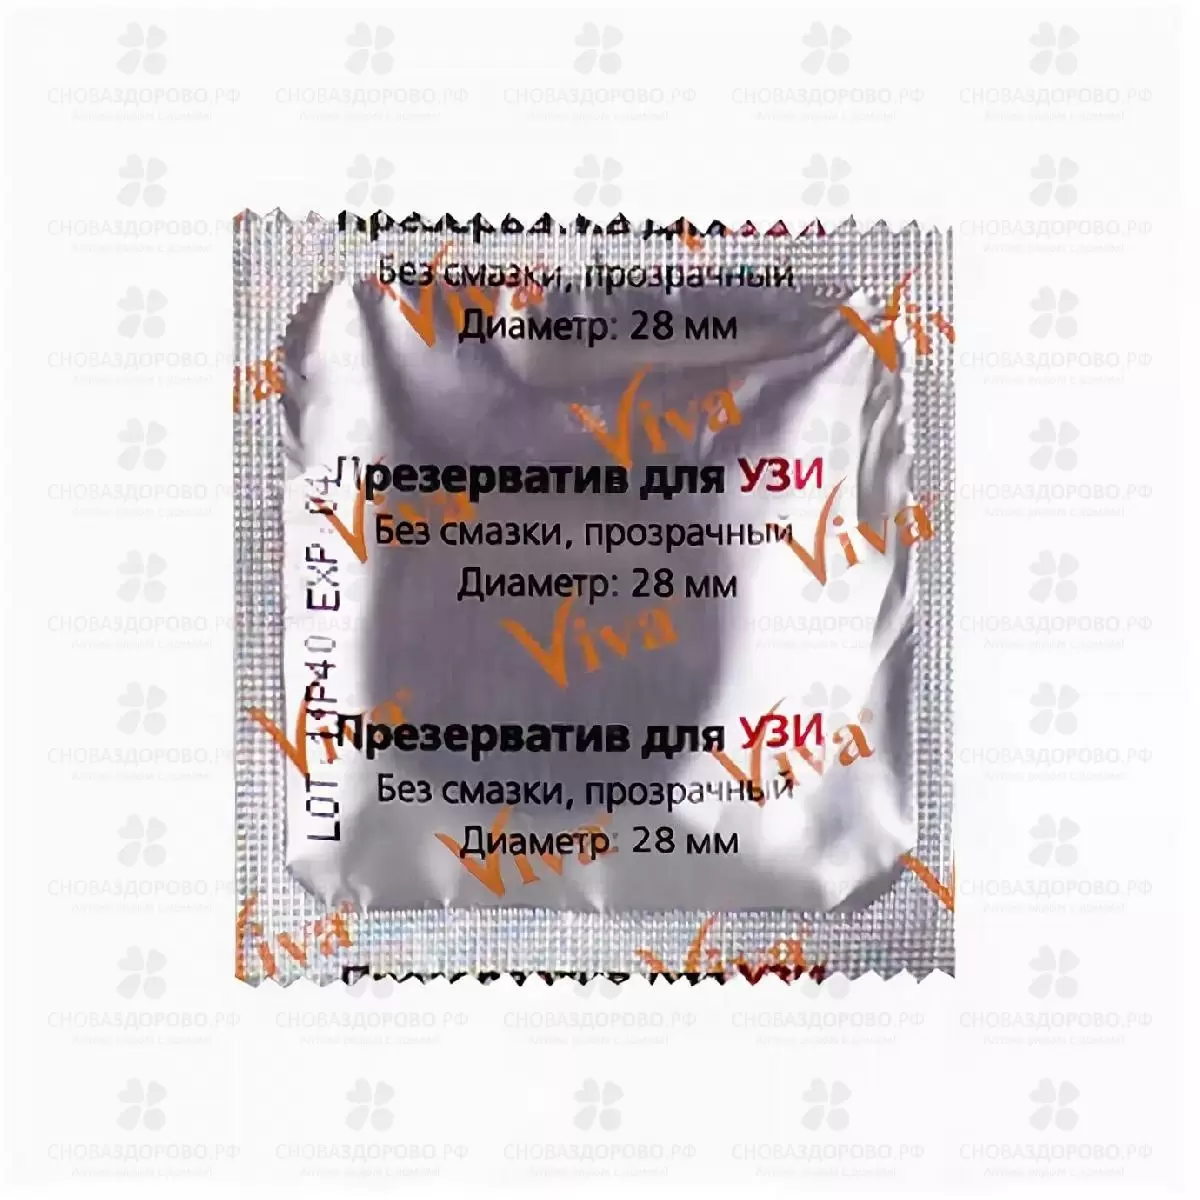 Презерватив для УЗИ №1 ✅ 15851/07228 | Сноваздорово.рф